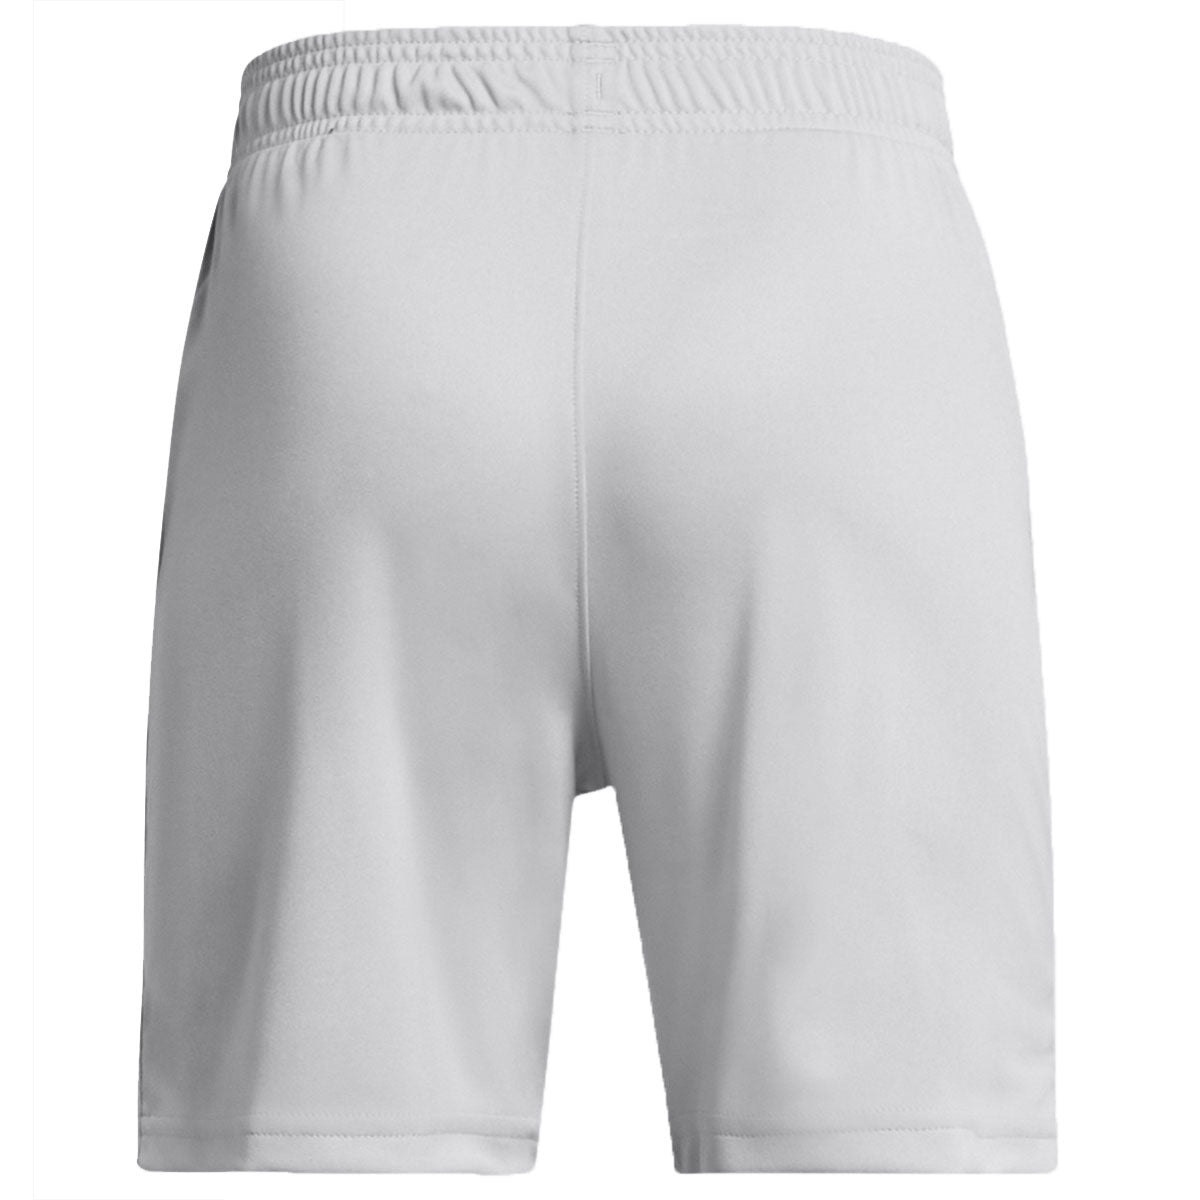 Under Armour Tech Logo Shorts - Boys - Mod Grey/White